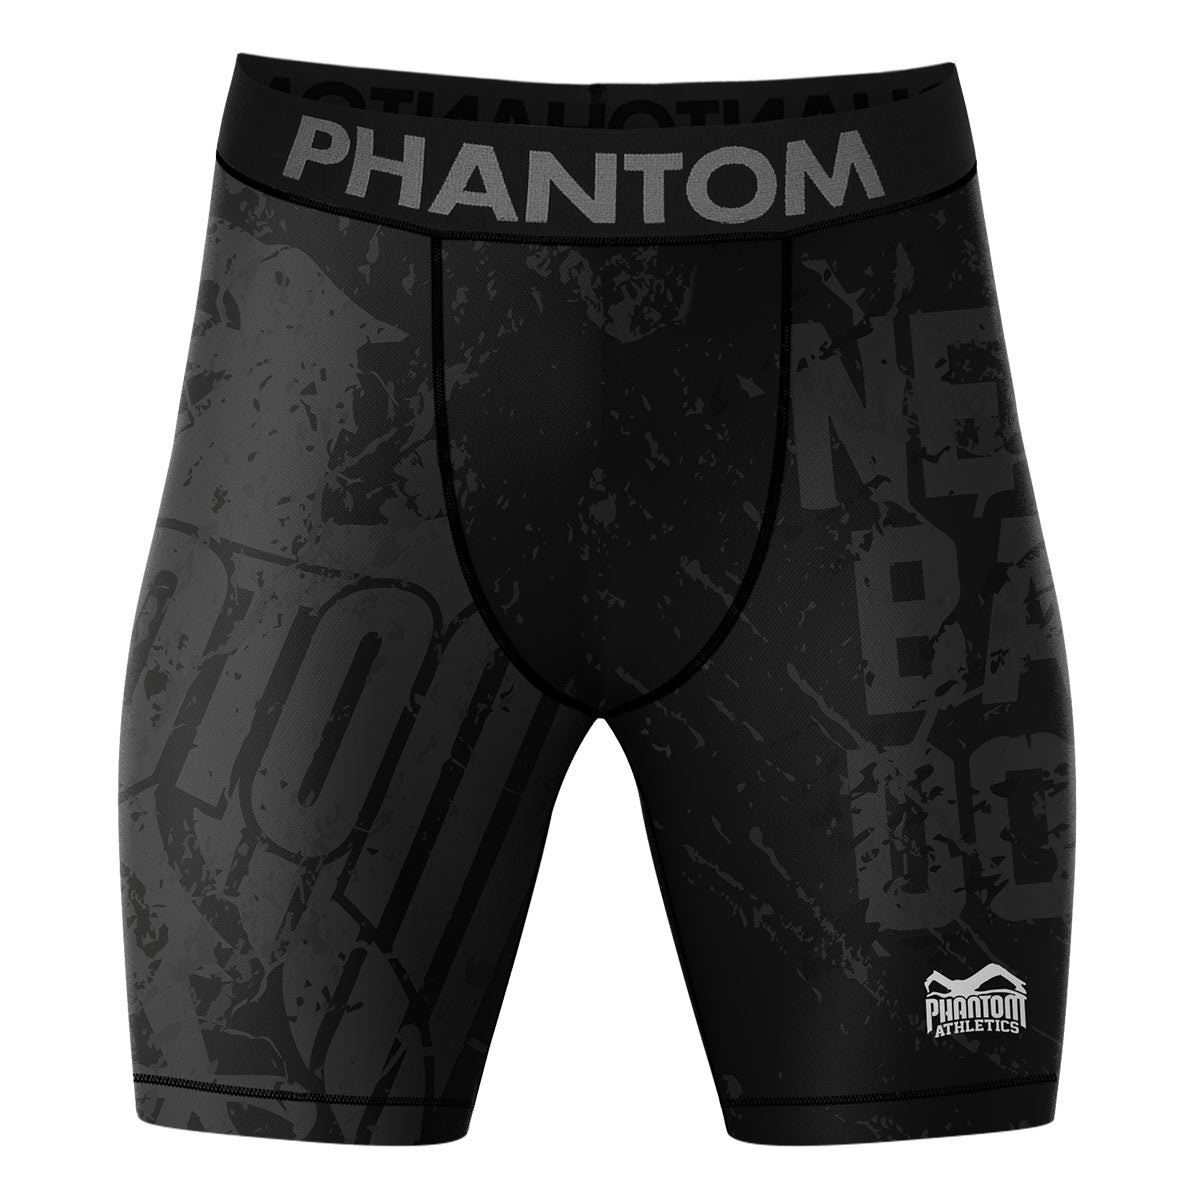 Os shorts de luta de compressão Phantom EVO com design Team Germany. Com águia da Alemanha e letras "Never Back Down". Ideal para seus esportes de combate, como MMA, Muay Thai, luta livre, Jiu-Jitsu ou kickboxing.